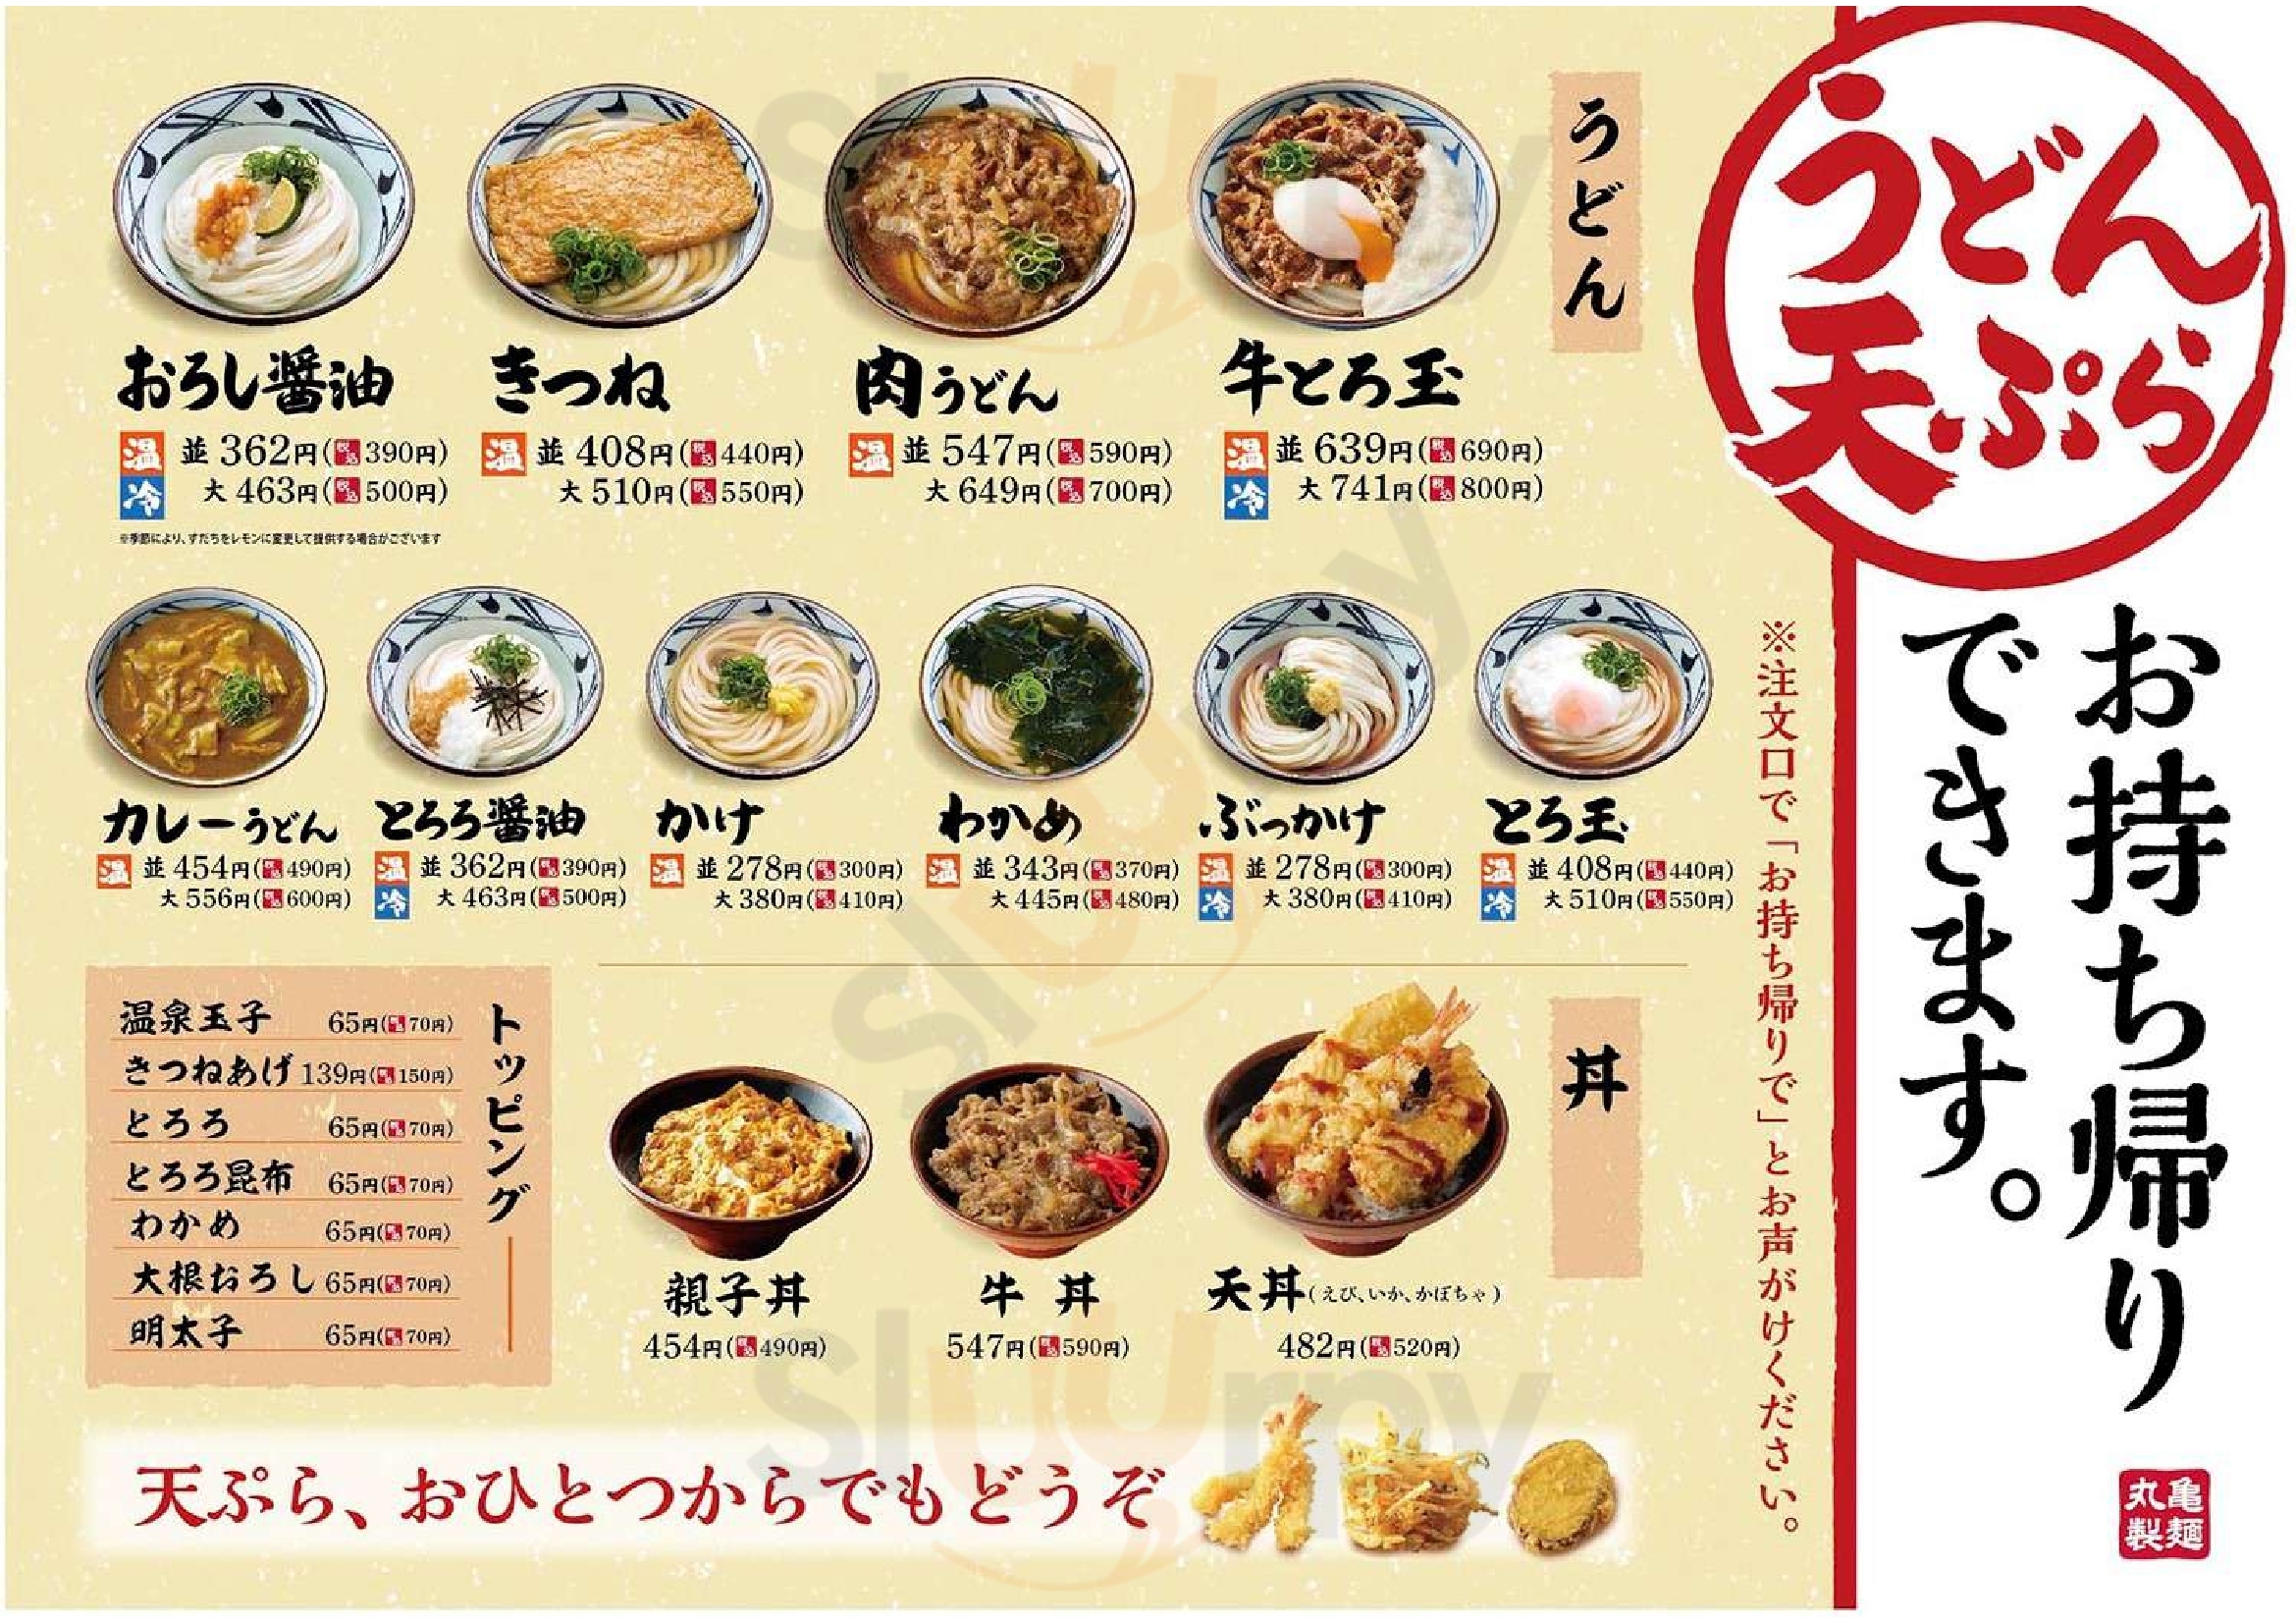 丸亀製麺 可部店 安佐北区 Menu - 1